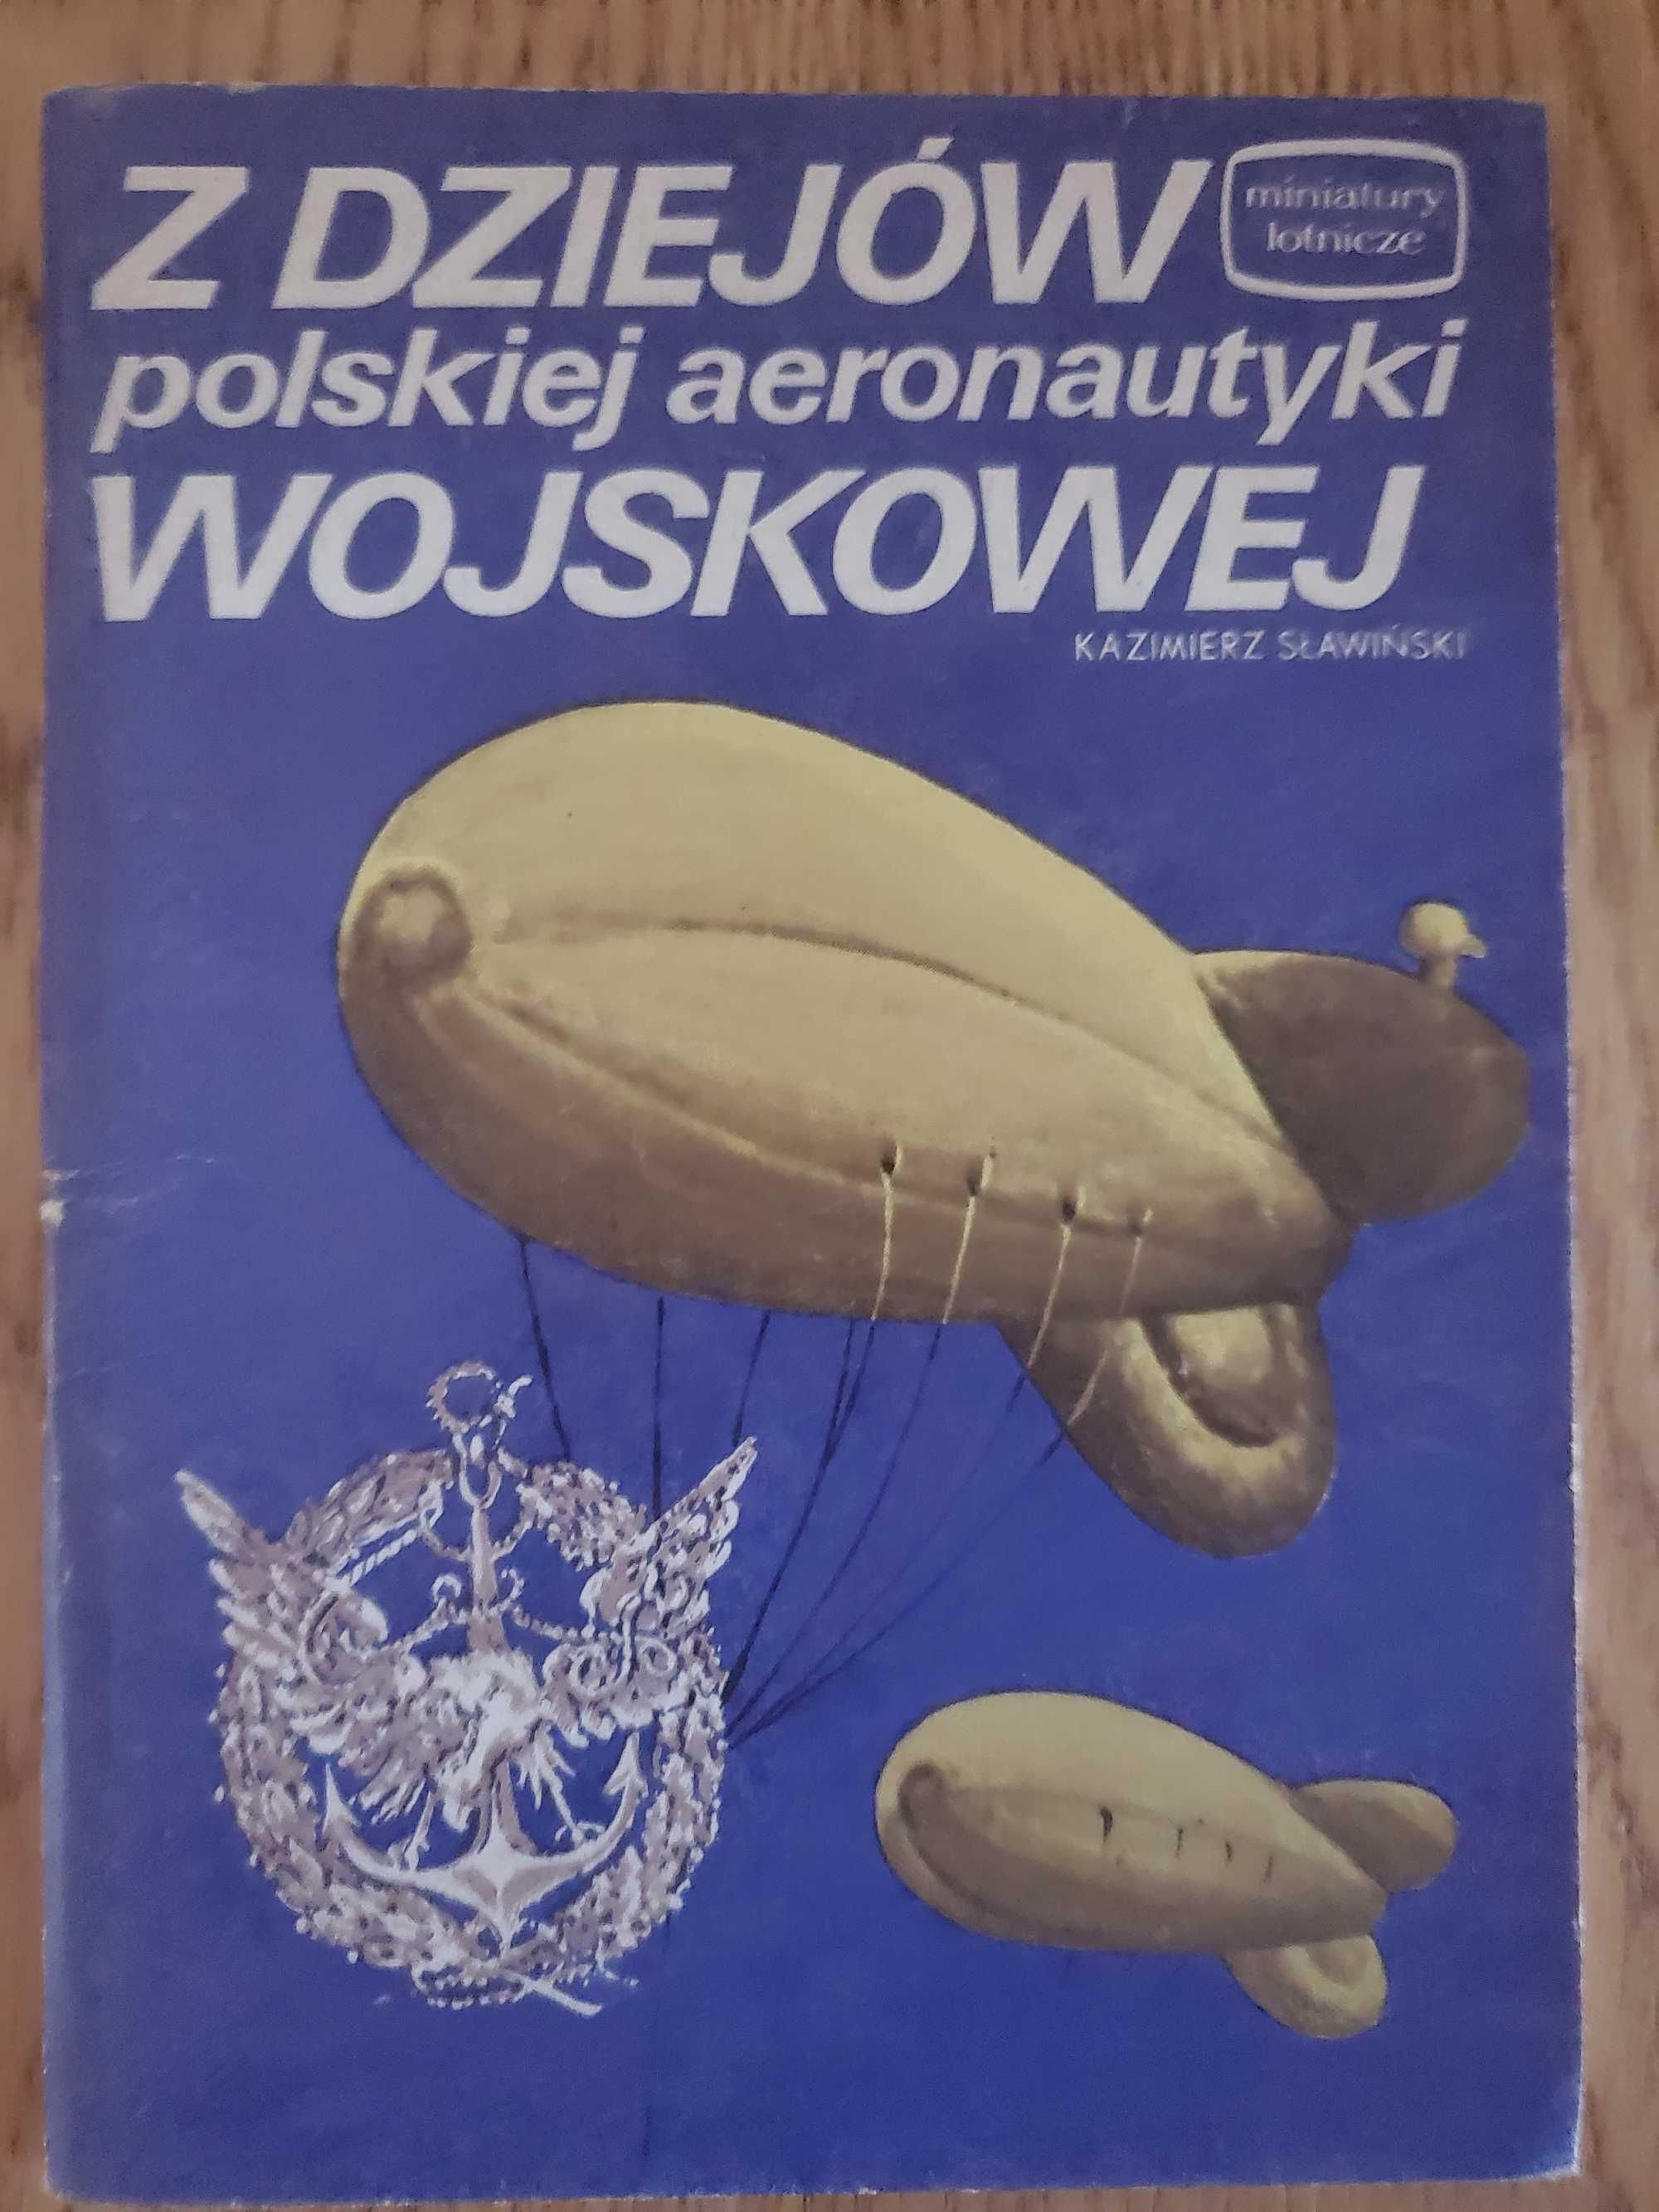 Z dziejów polskiej aeronautyki wojskowej - Kazimierz Sławiński